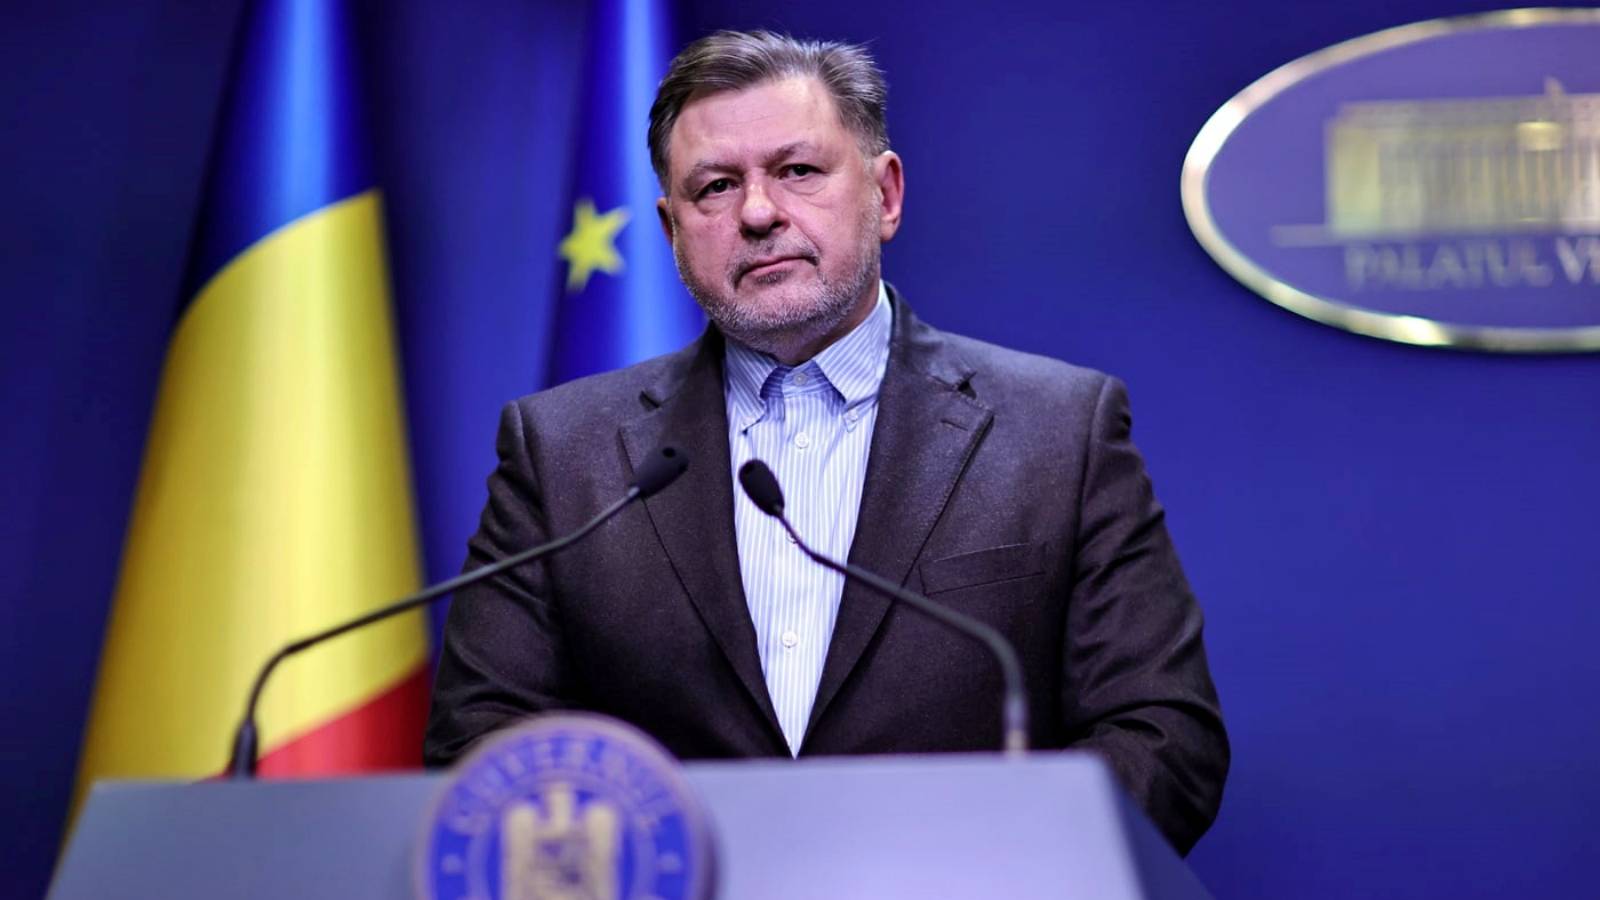 Il Ministro della Sanità ha inviato l'ultima volta dichiarazioni importanti a tutti i romeni